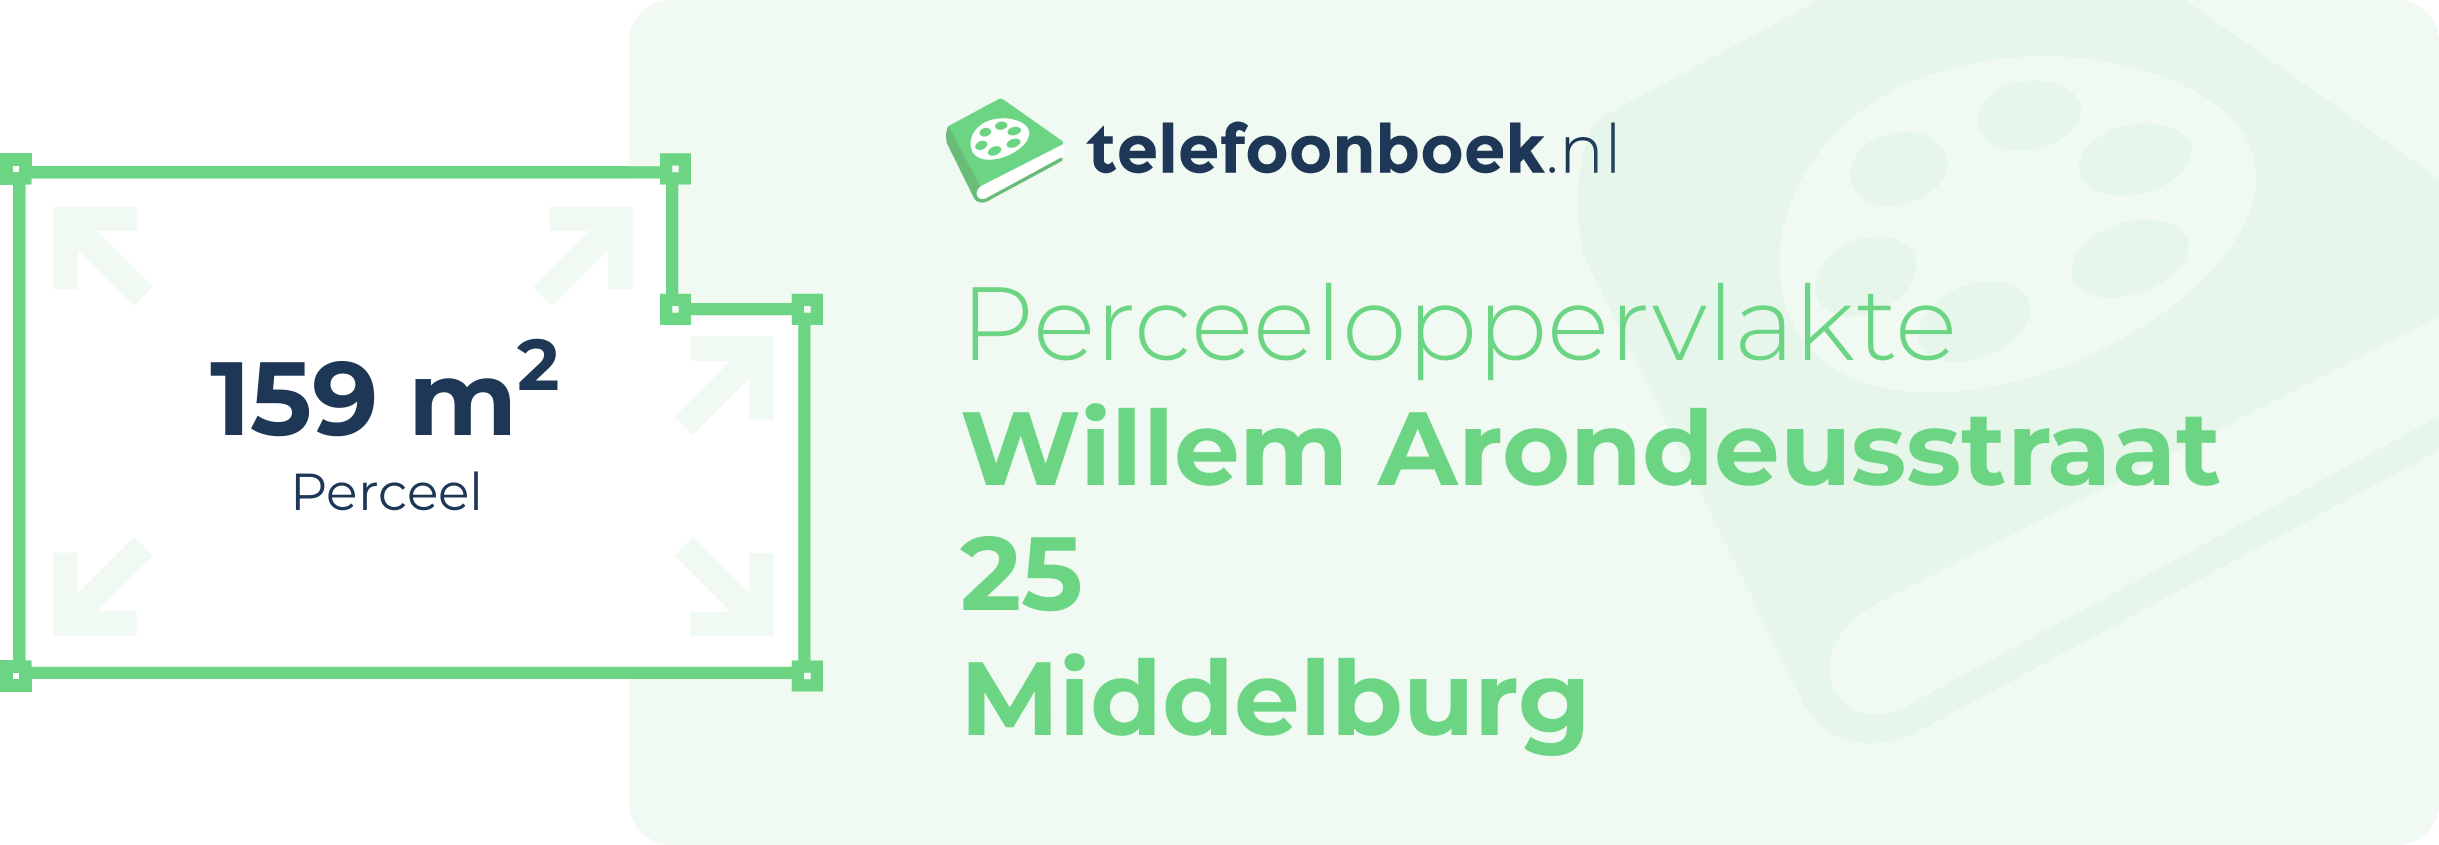 Perceeloppervlakte Willem Arondeusstraat 25 Middelburg